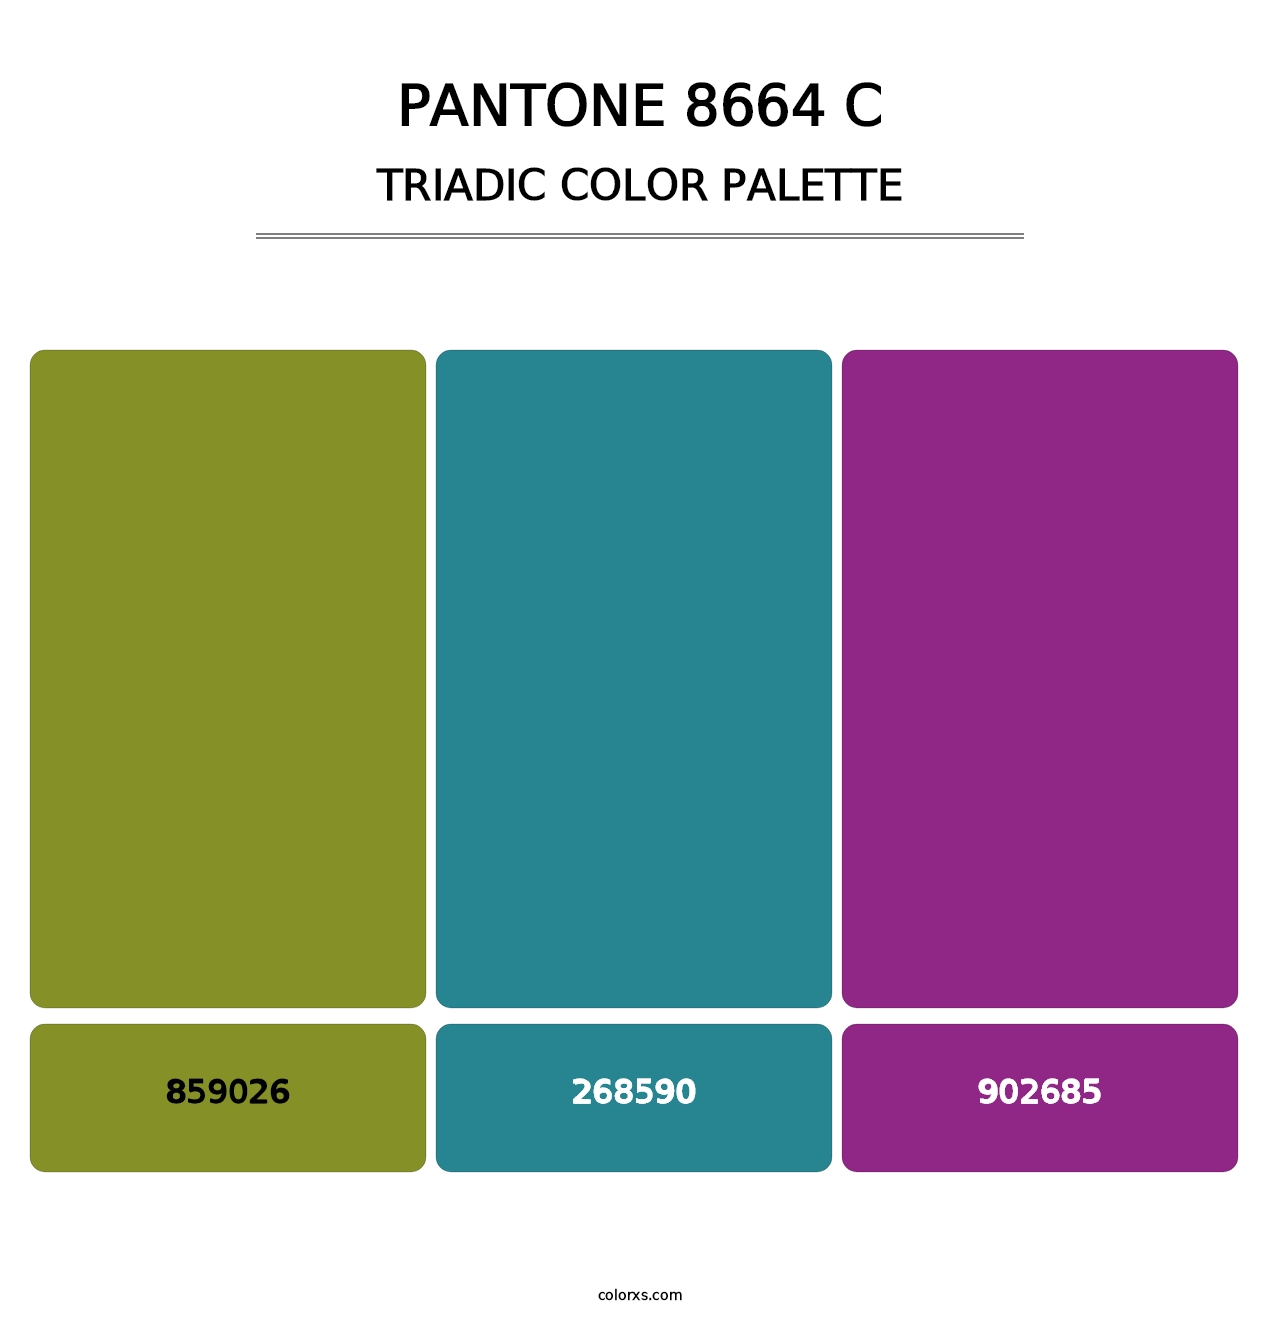 PANTONE 8664 C - Triadic Color Palette